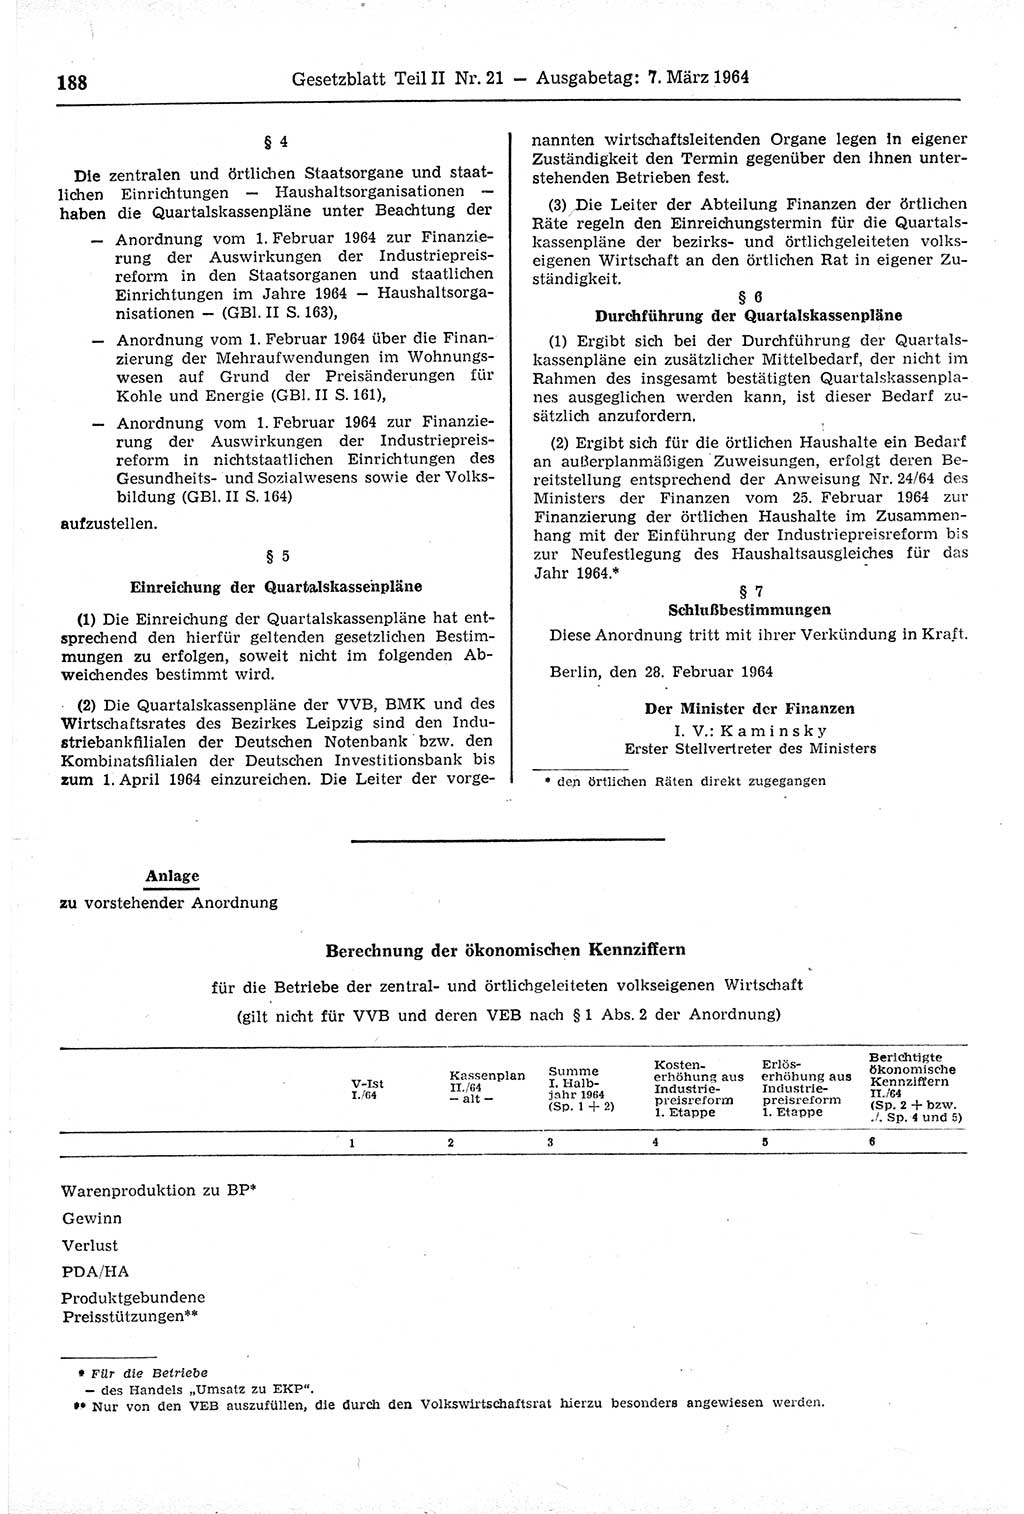 Gesetzblatt (GBl.) der Deutschen Demokratischen Republik (DDR) Teil ⅠⅠ 1964, Seite 188 (GBl. DDR ⅠⅠ 1964, S. 188)